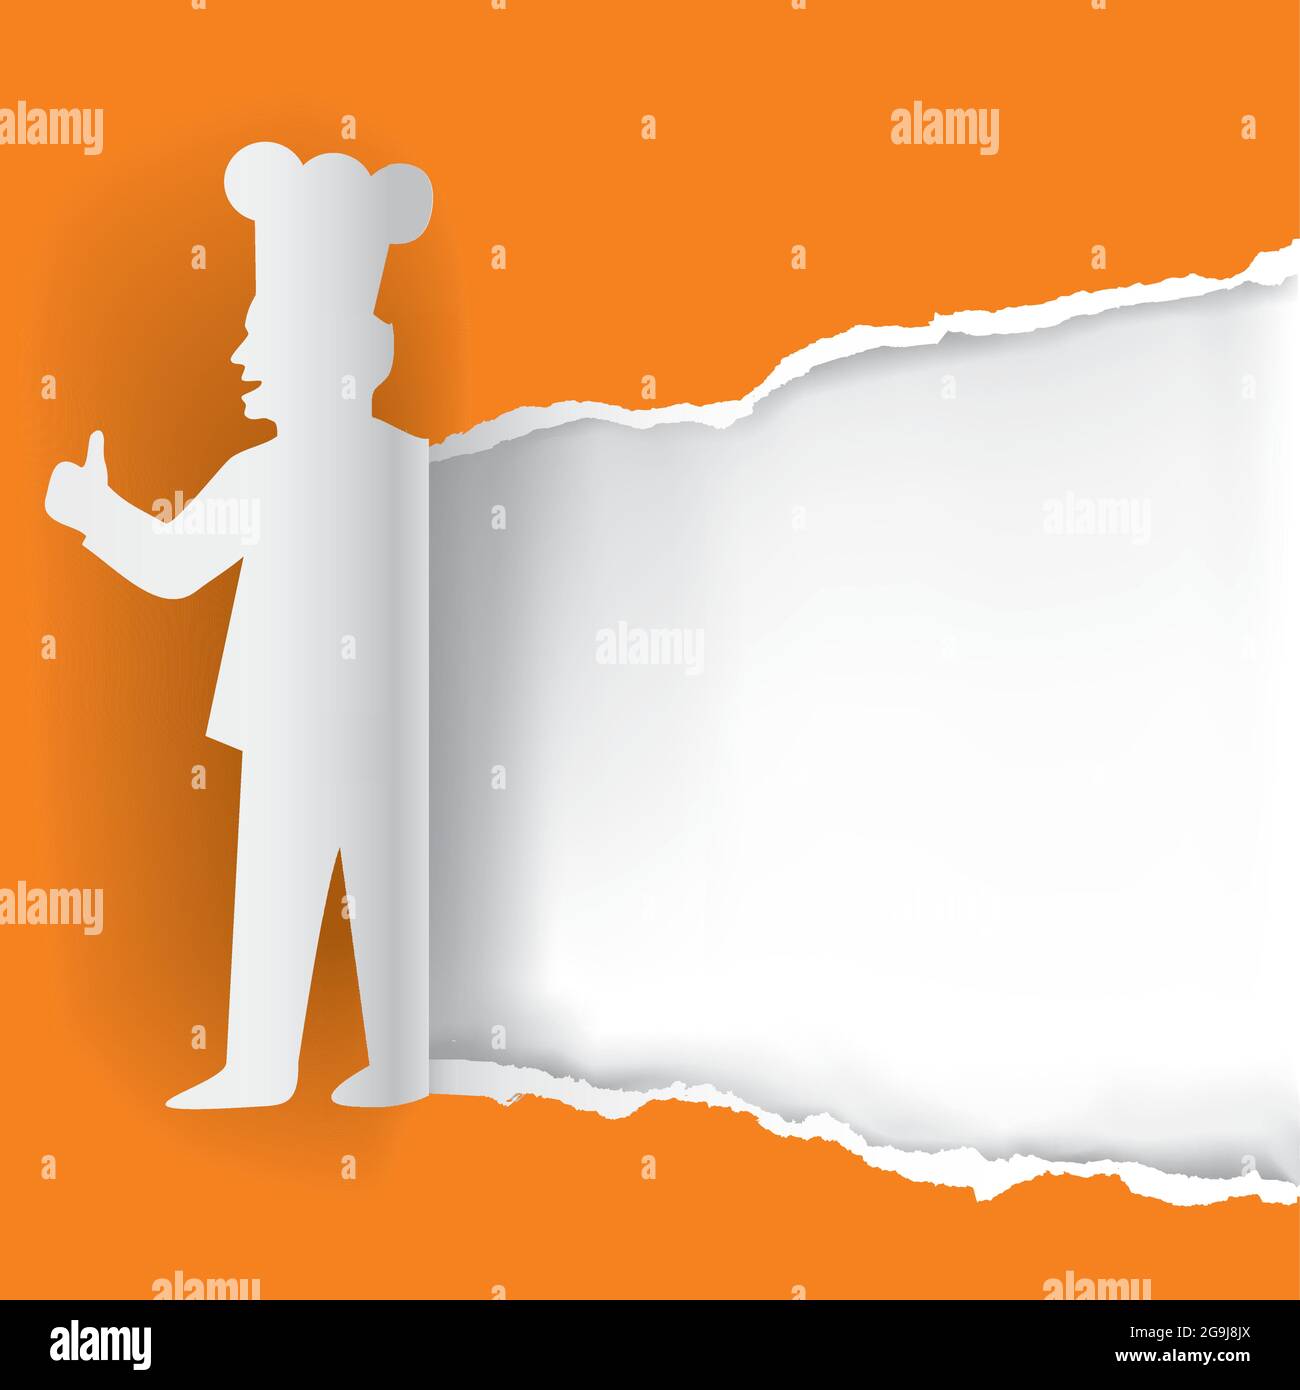 Chef de papier, modèle de bannière. Fond en papier orange avec silhouette stylisée de cuisinier en papier. Vecteur disponible. Illustration de Vecteur